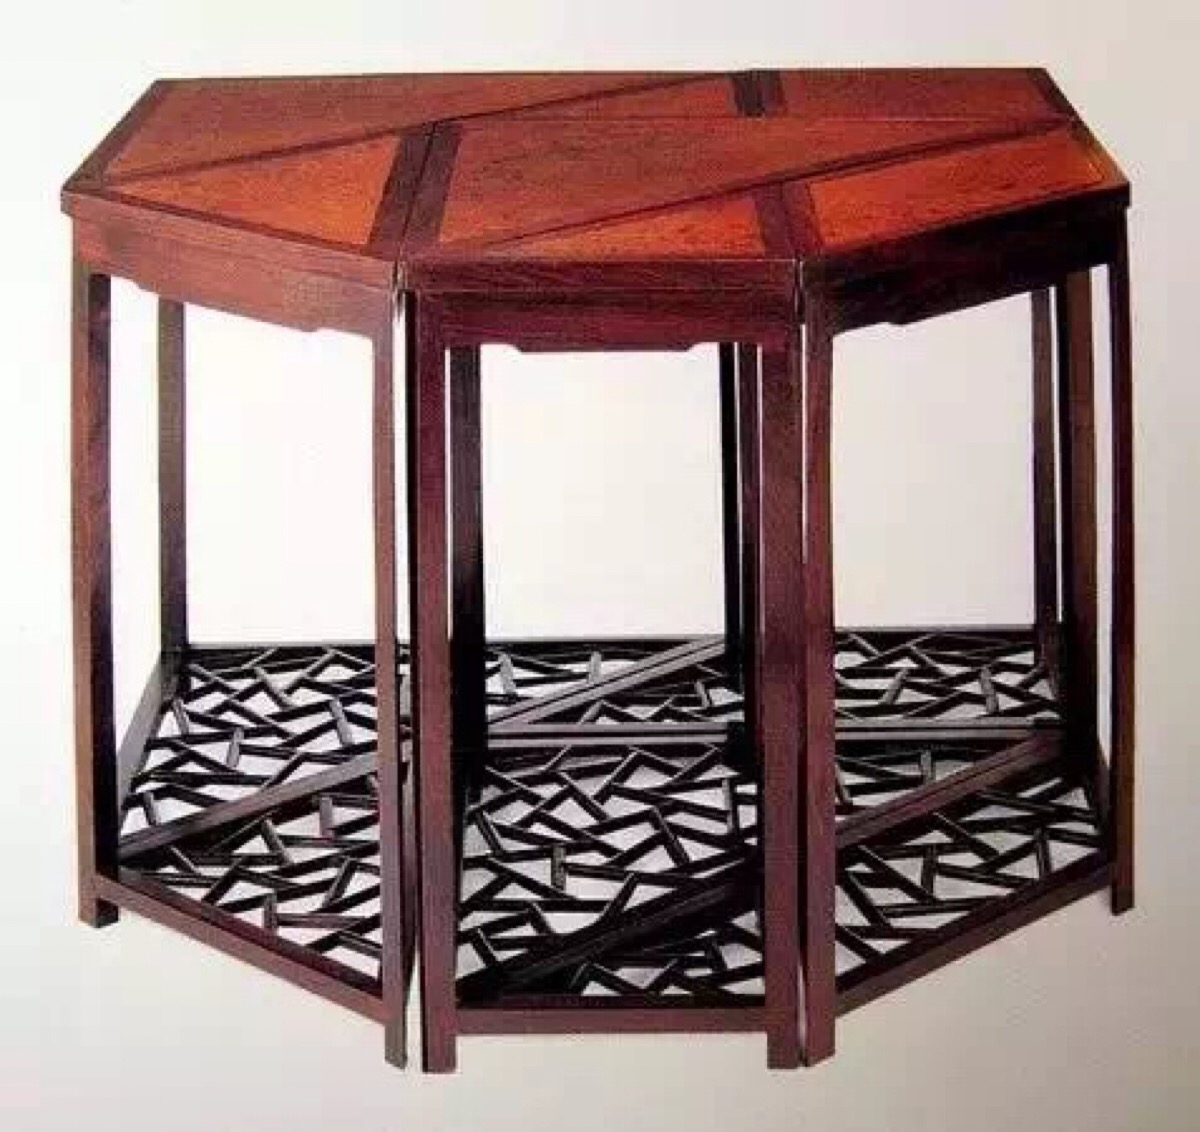 燕几与蝶几最后发展为清代的七巧桌,也就是七巧板的来源